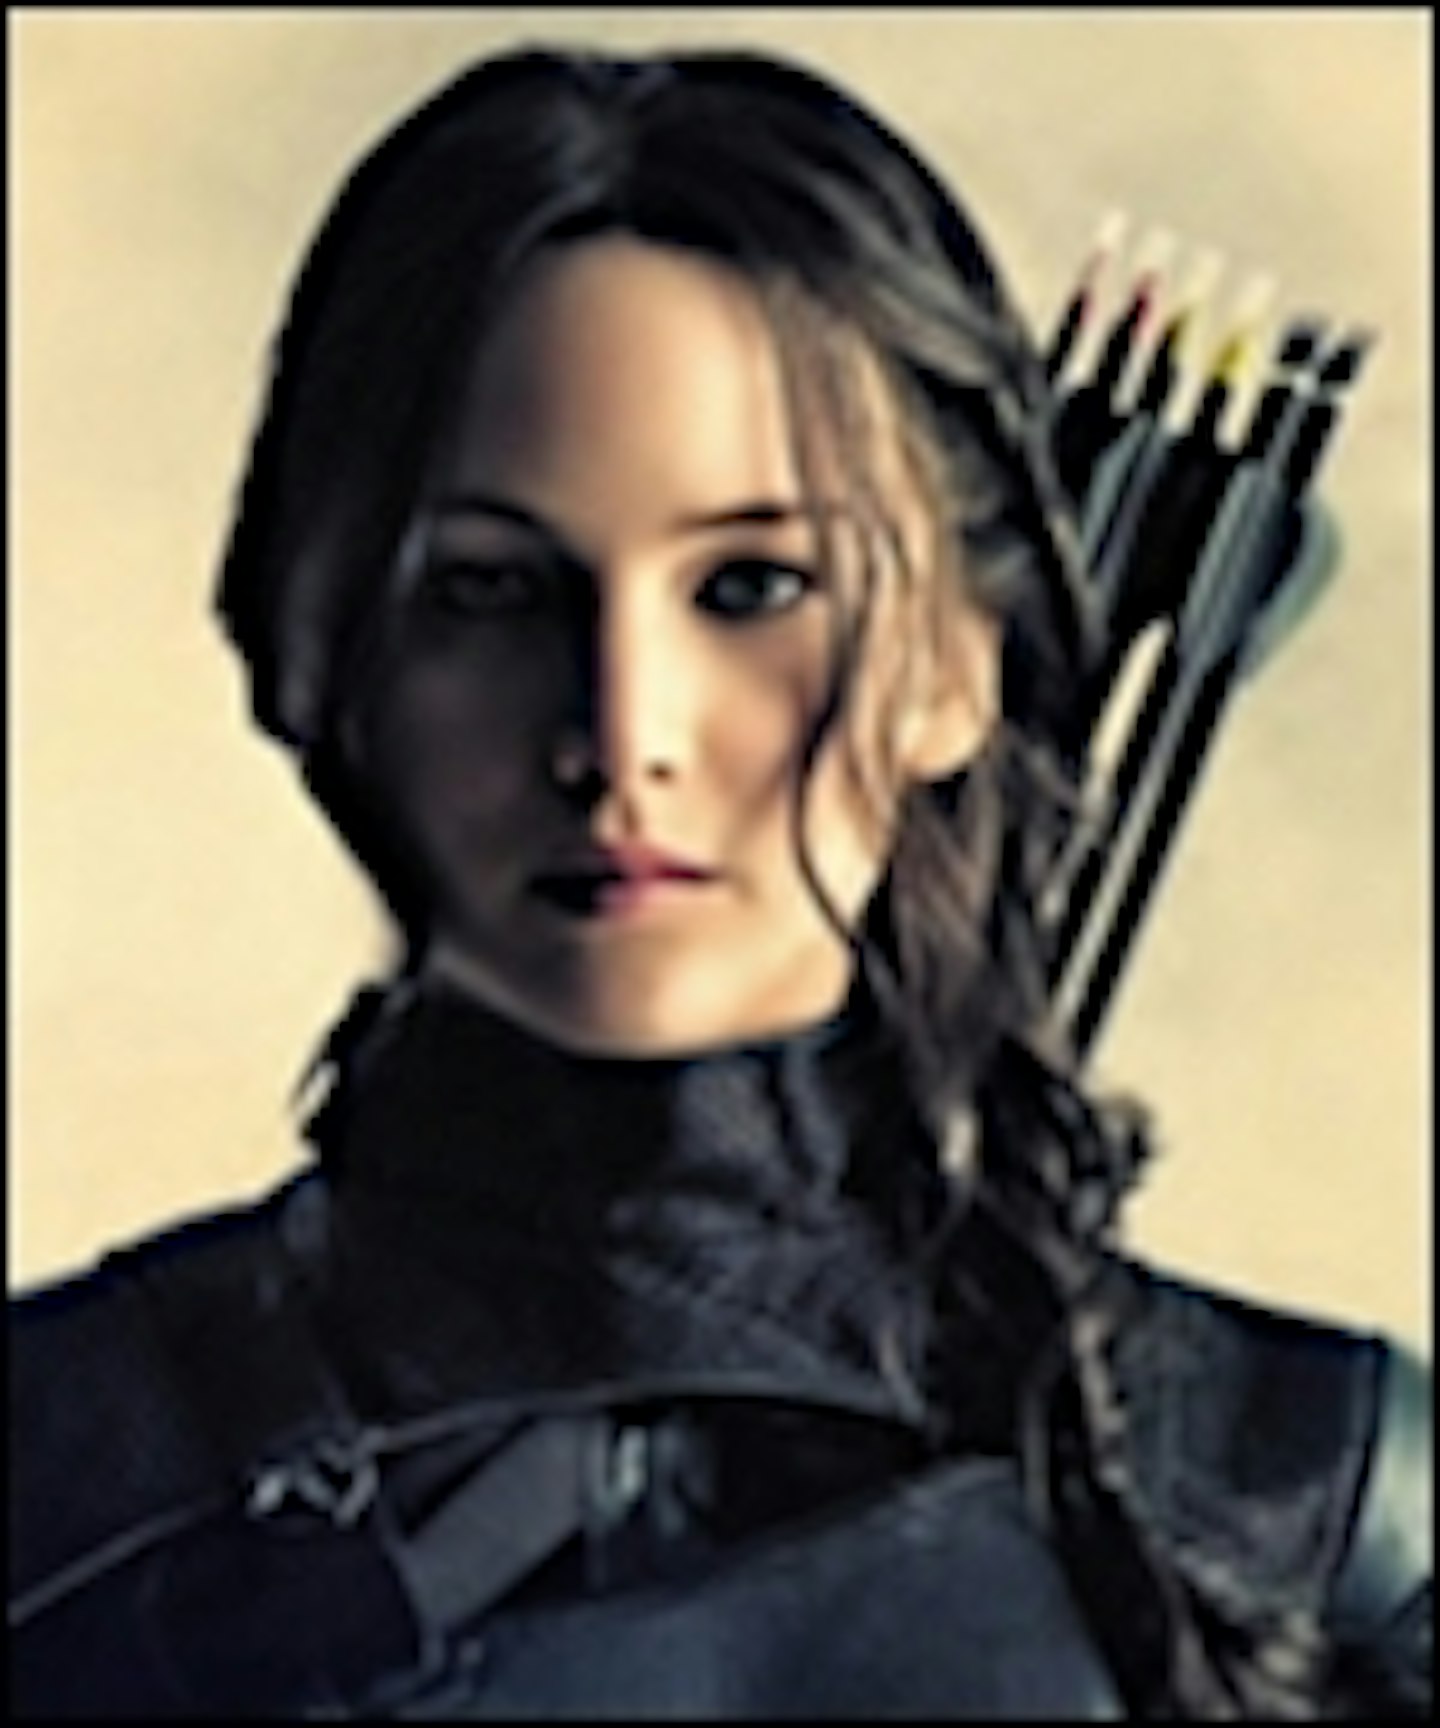 New Full Trailer For The Hunger Games: Mockingjay - Part 2